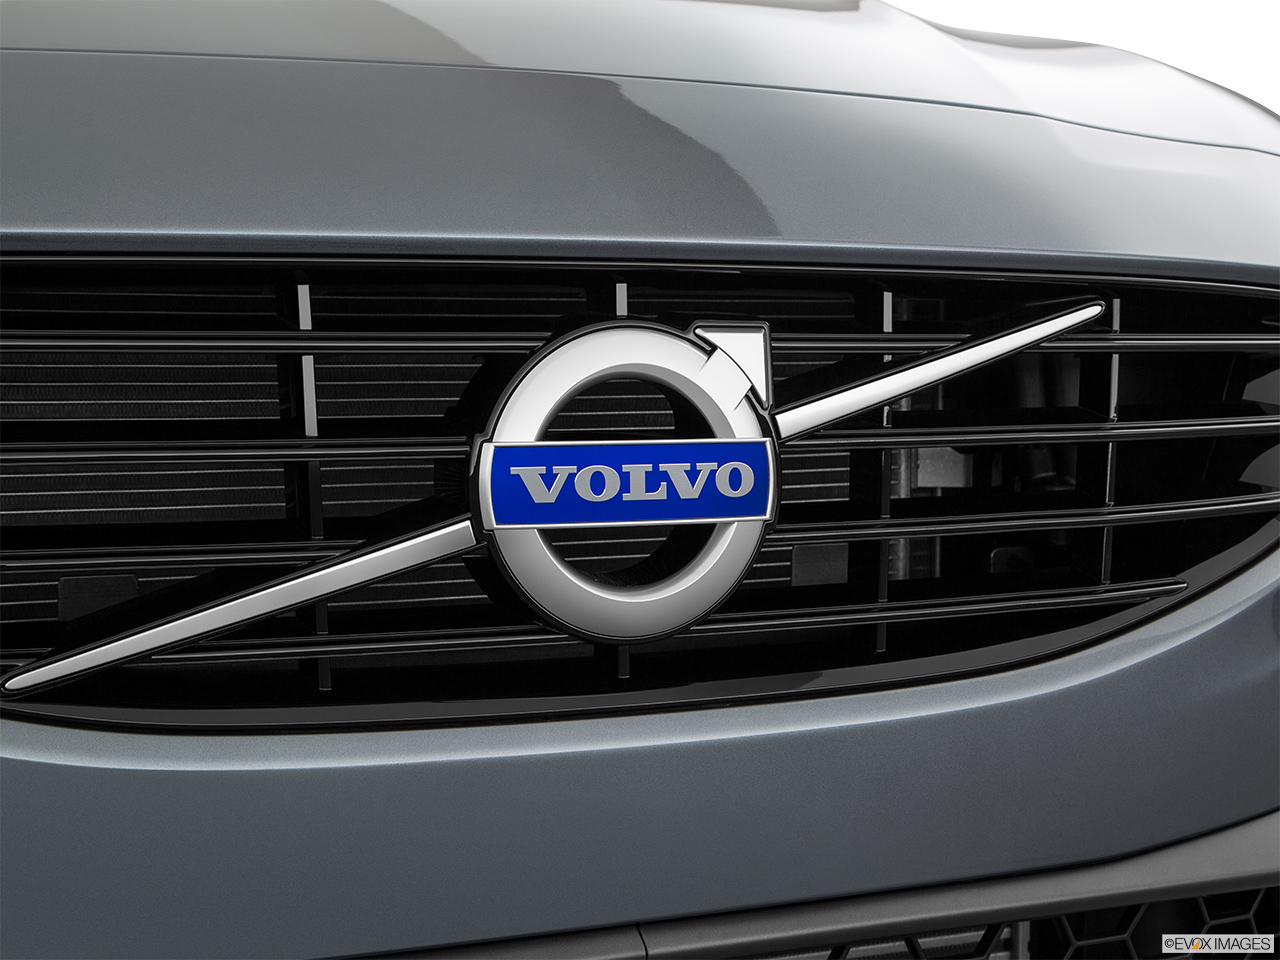 2018 Volvo V60 T5 Dynamic Rear manufacture badge/emblem 